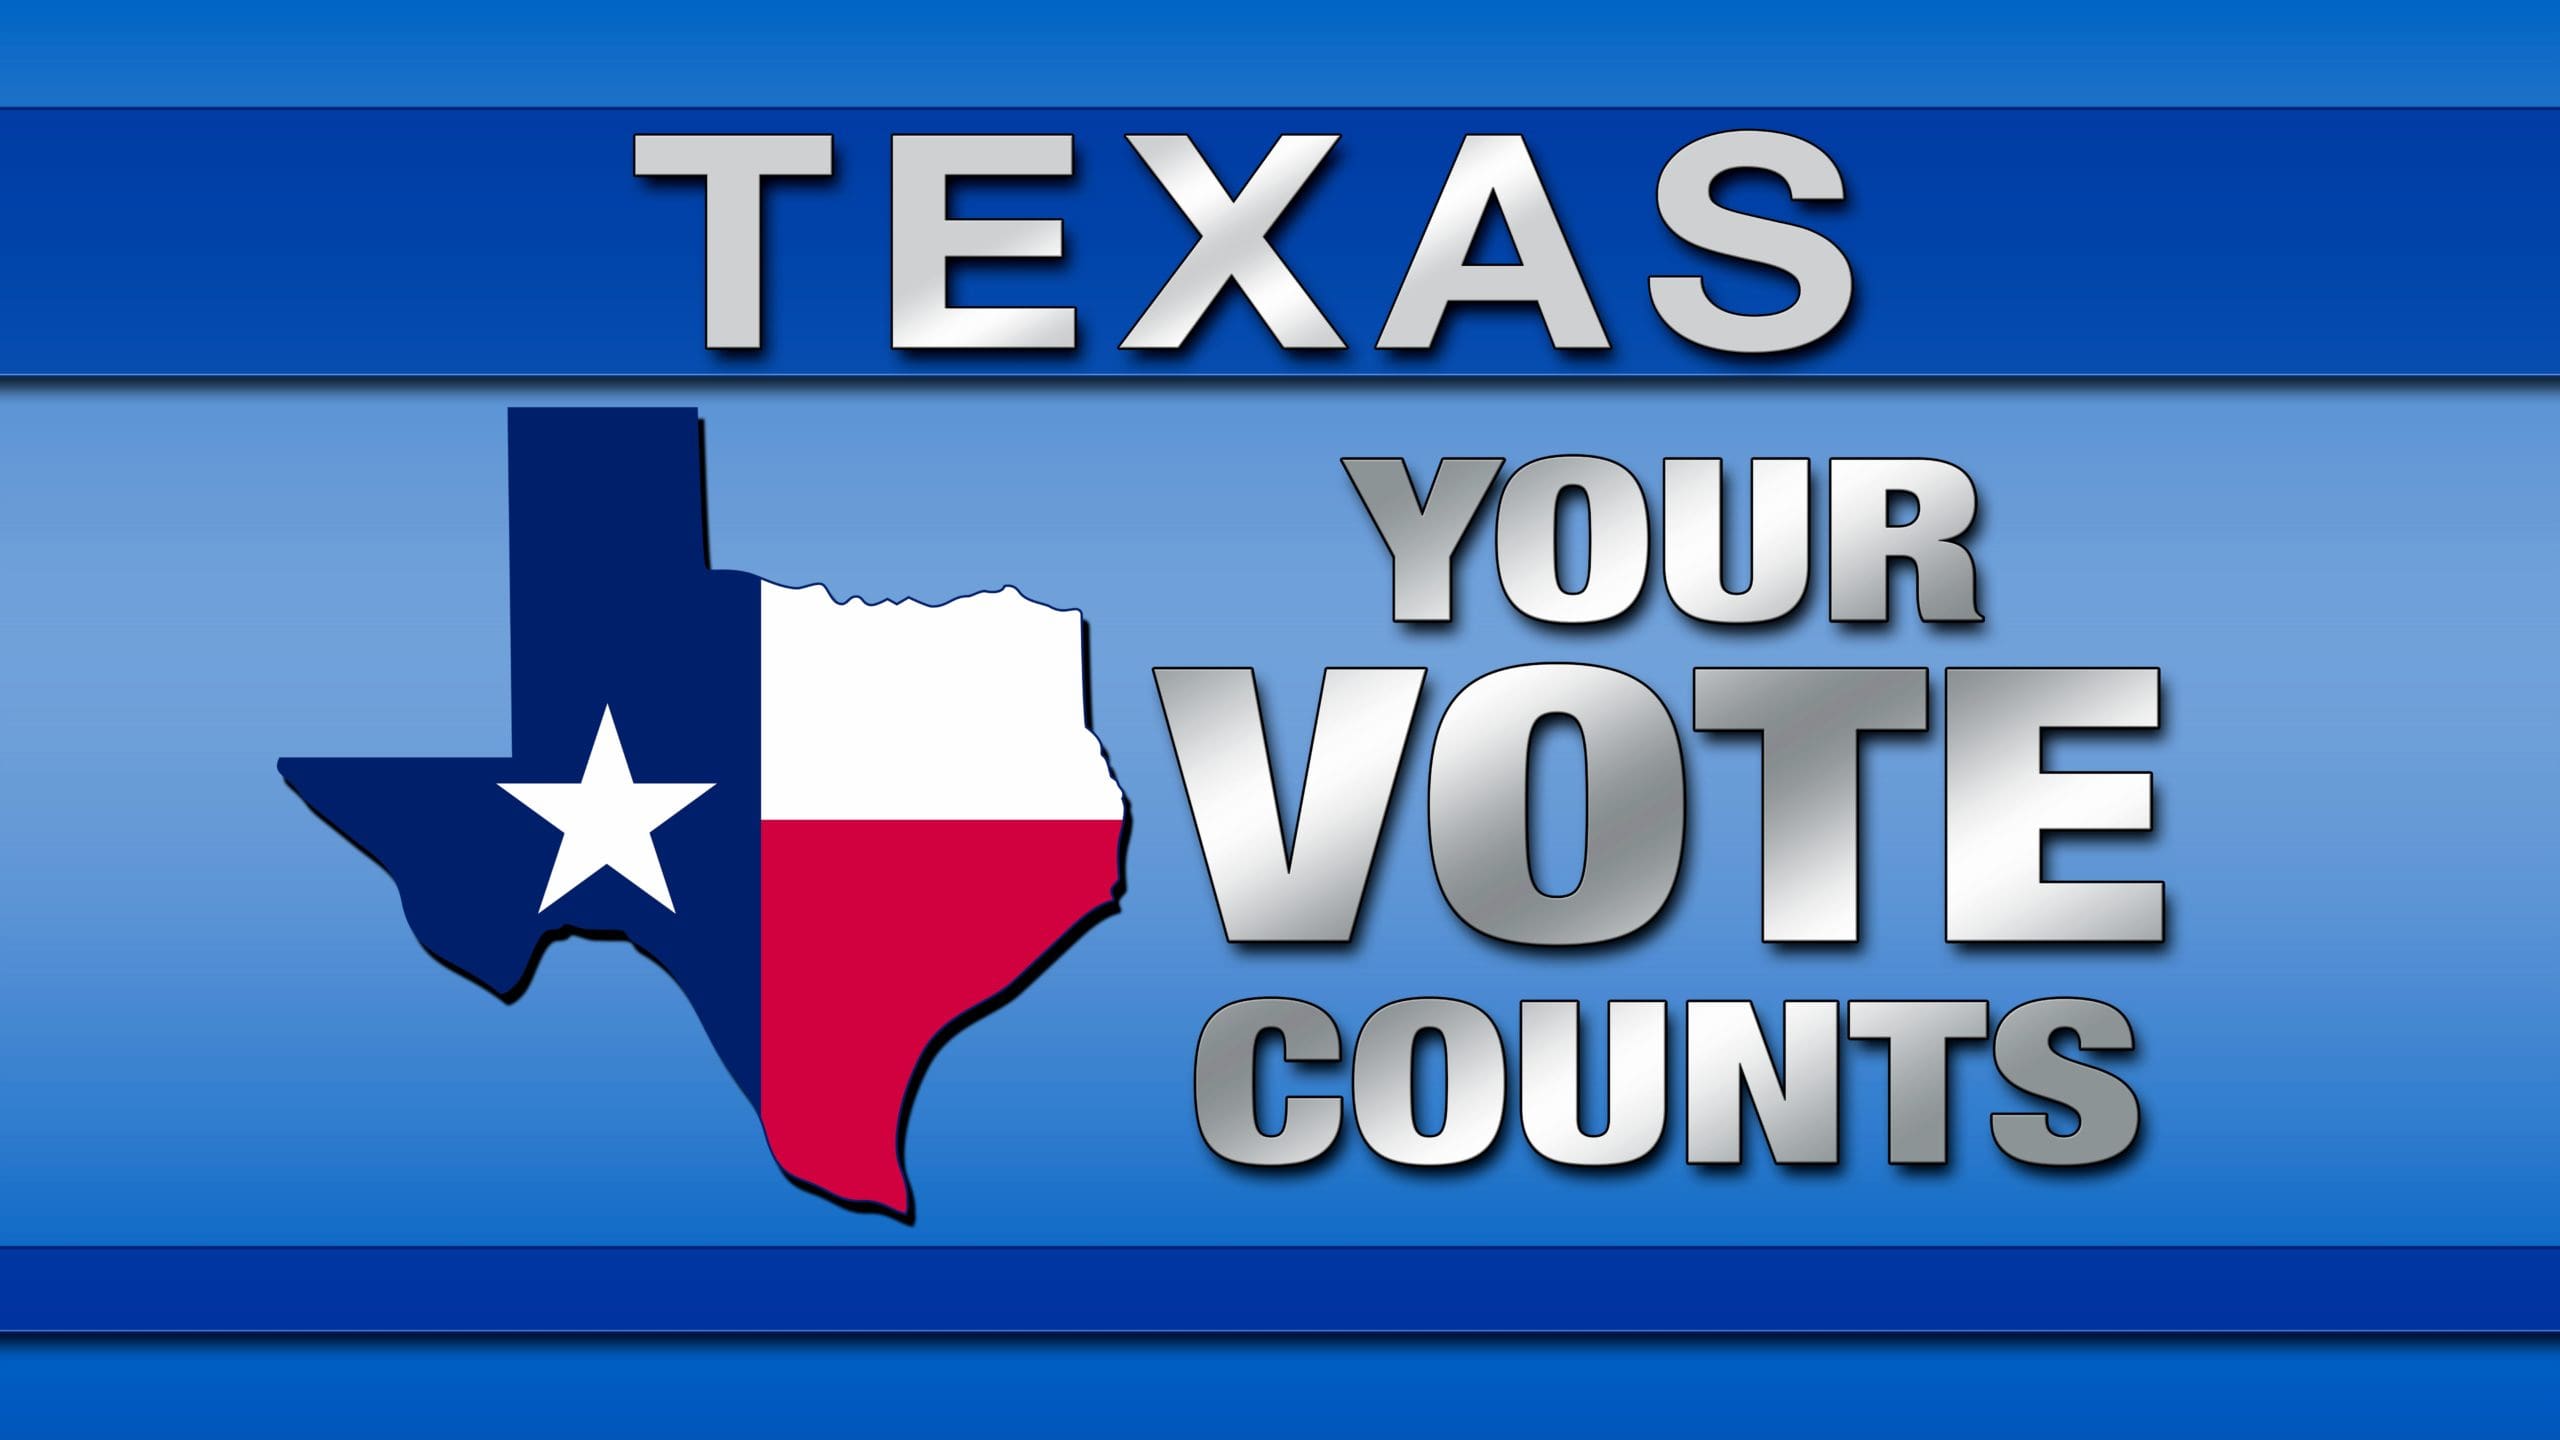 Texas Governor Legislative wins